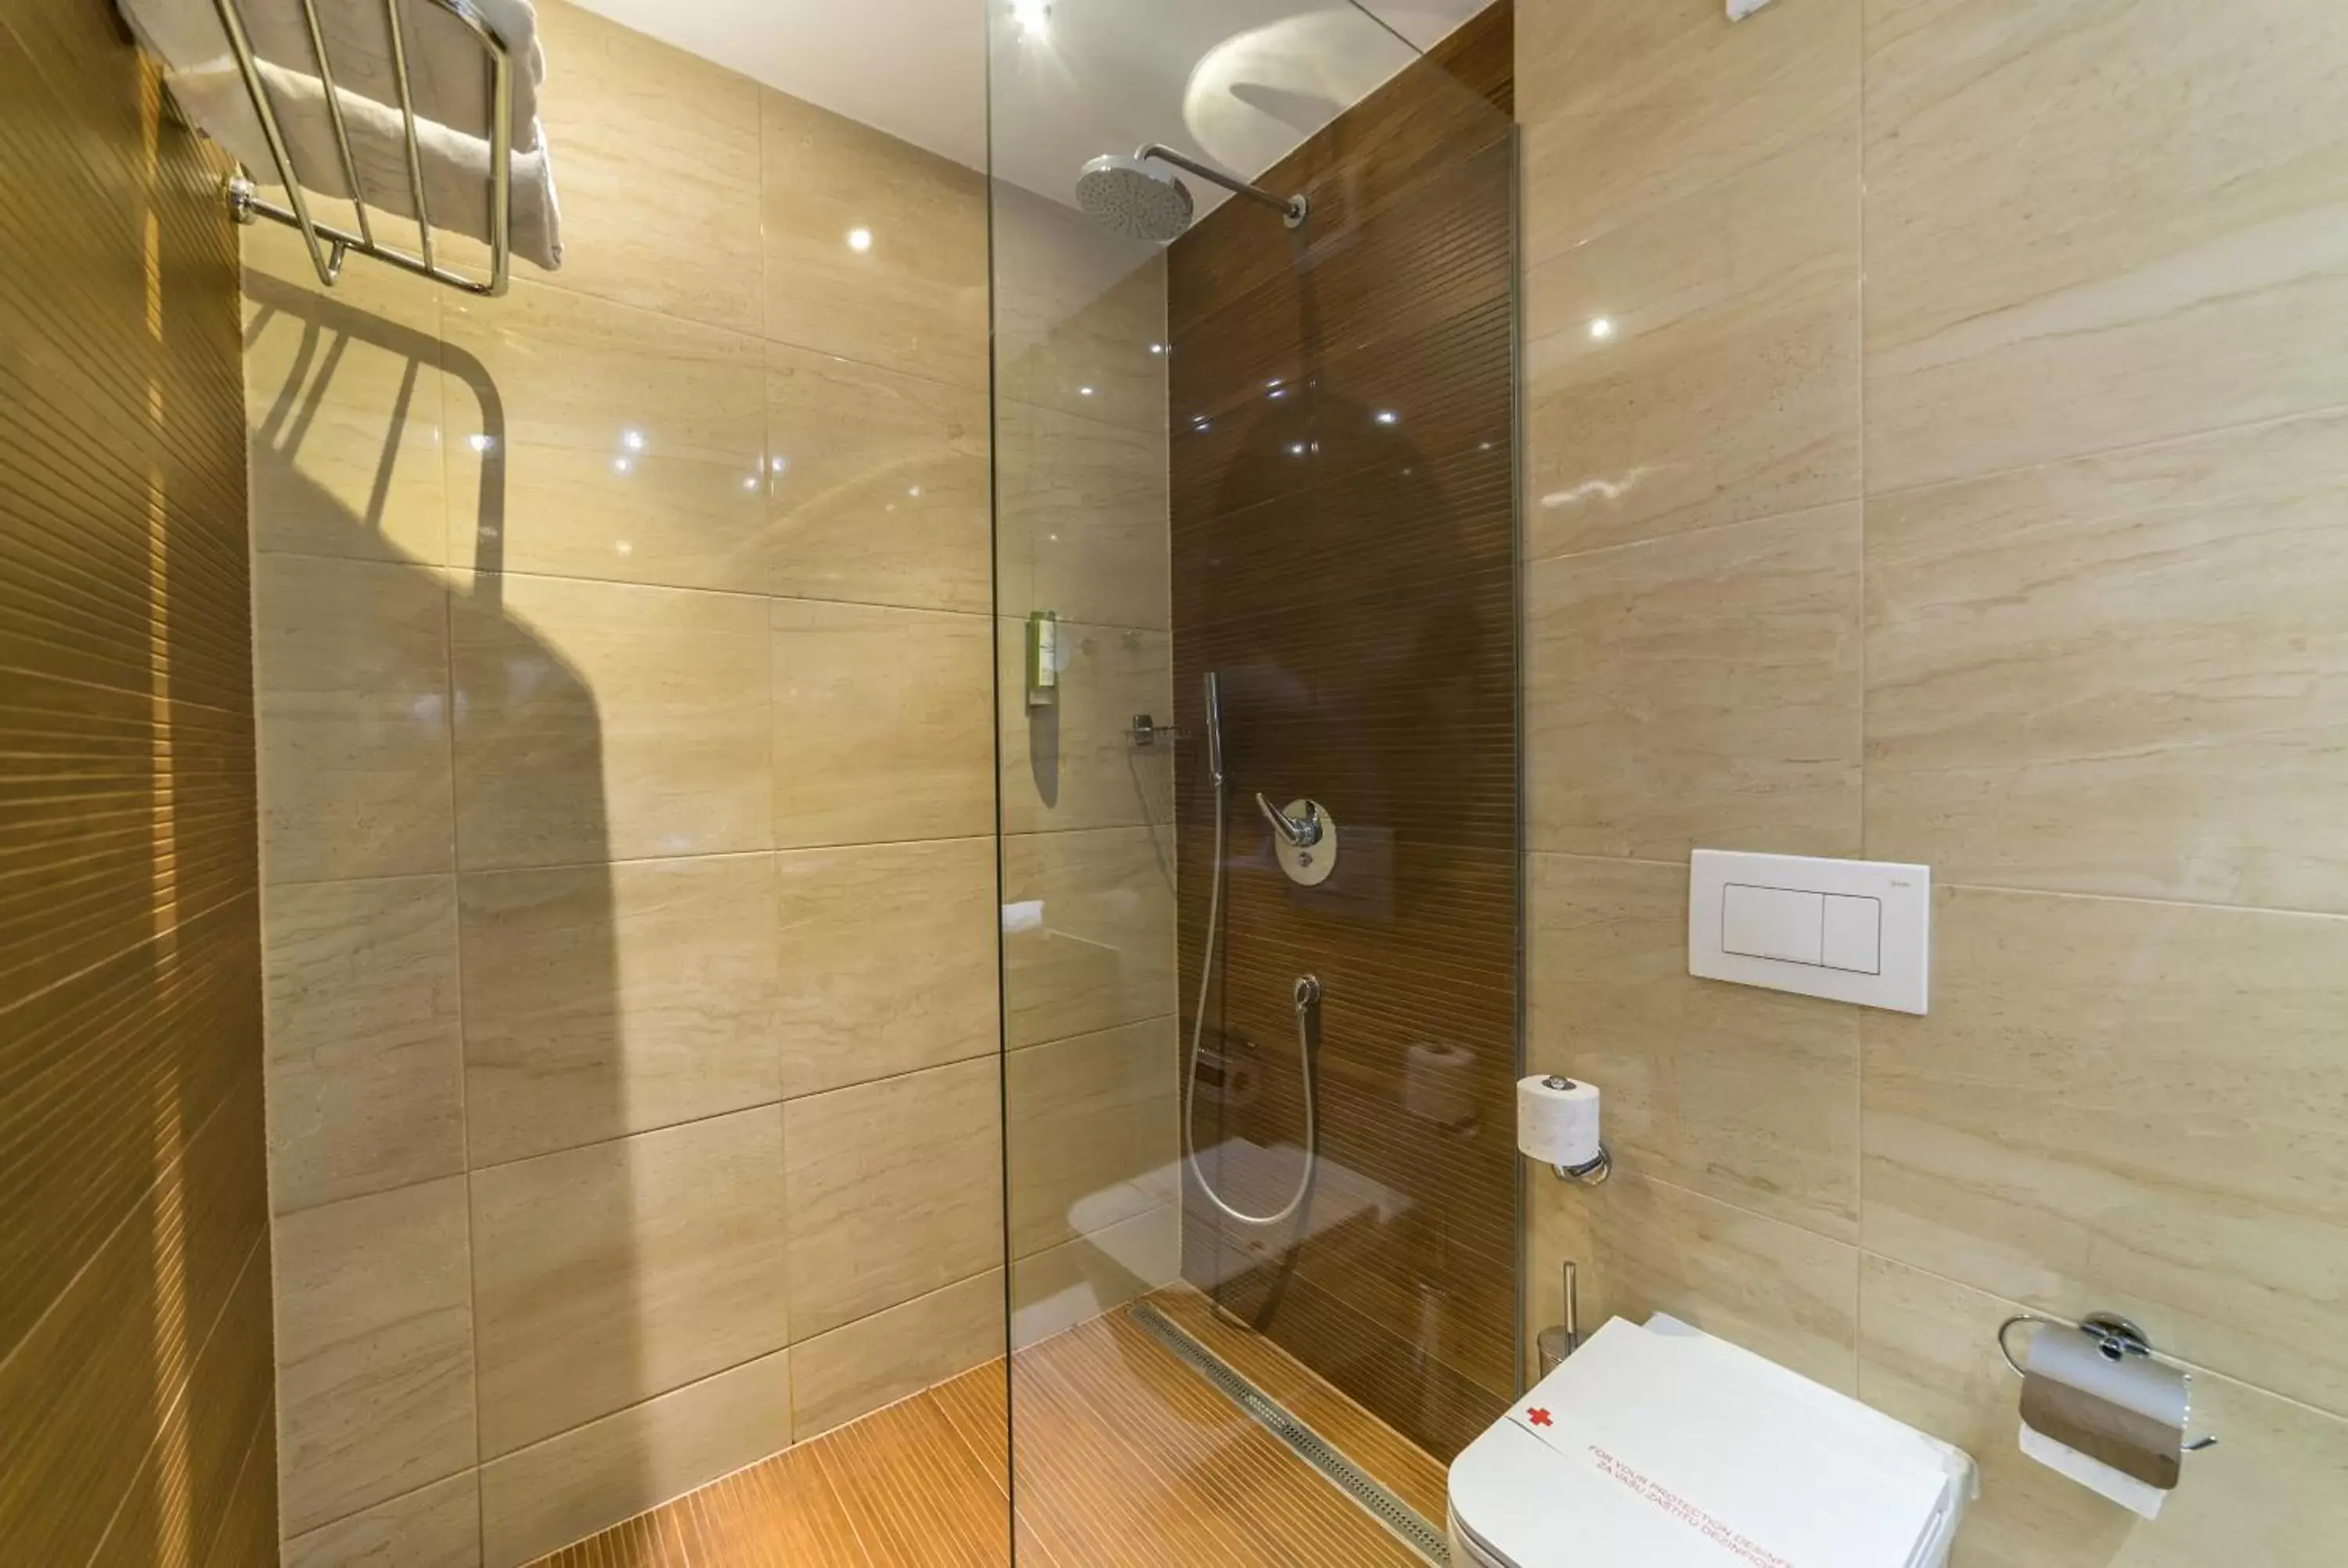 Bathroom in City Hotel Mostar